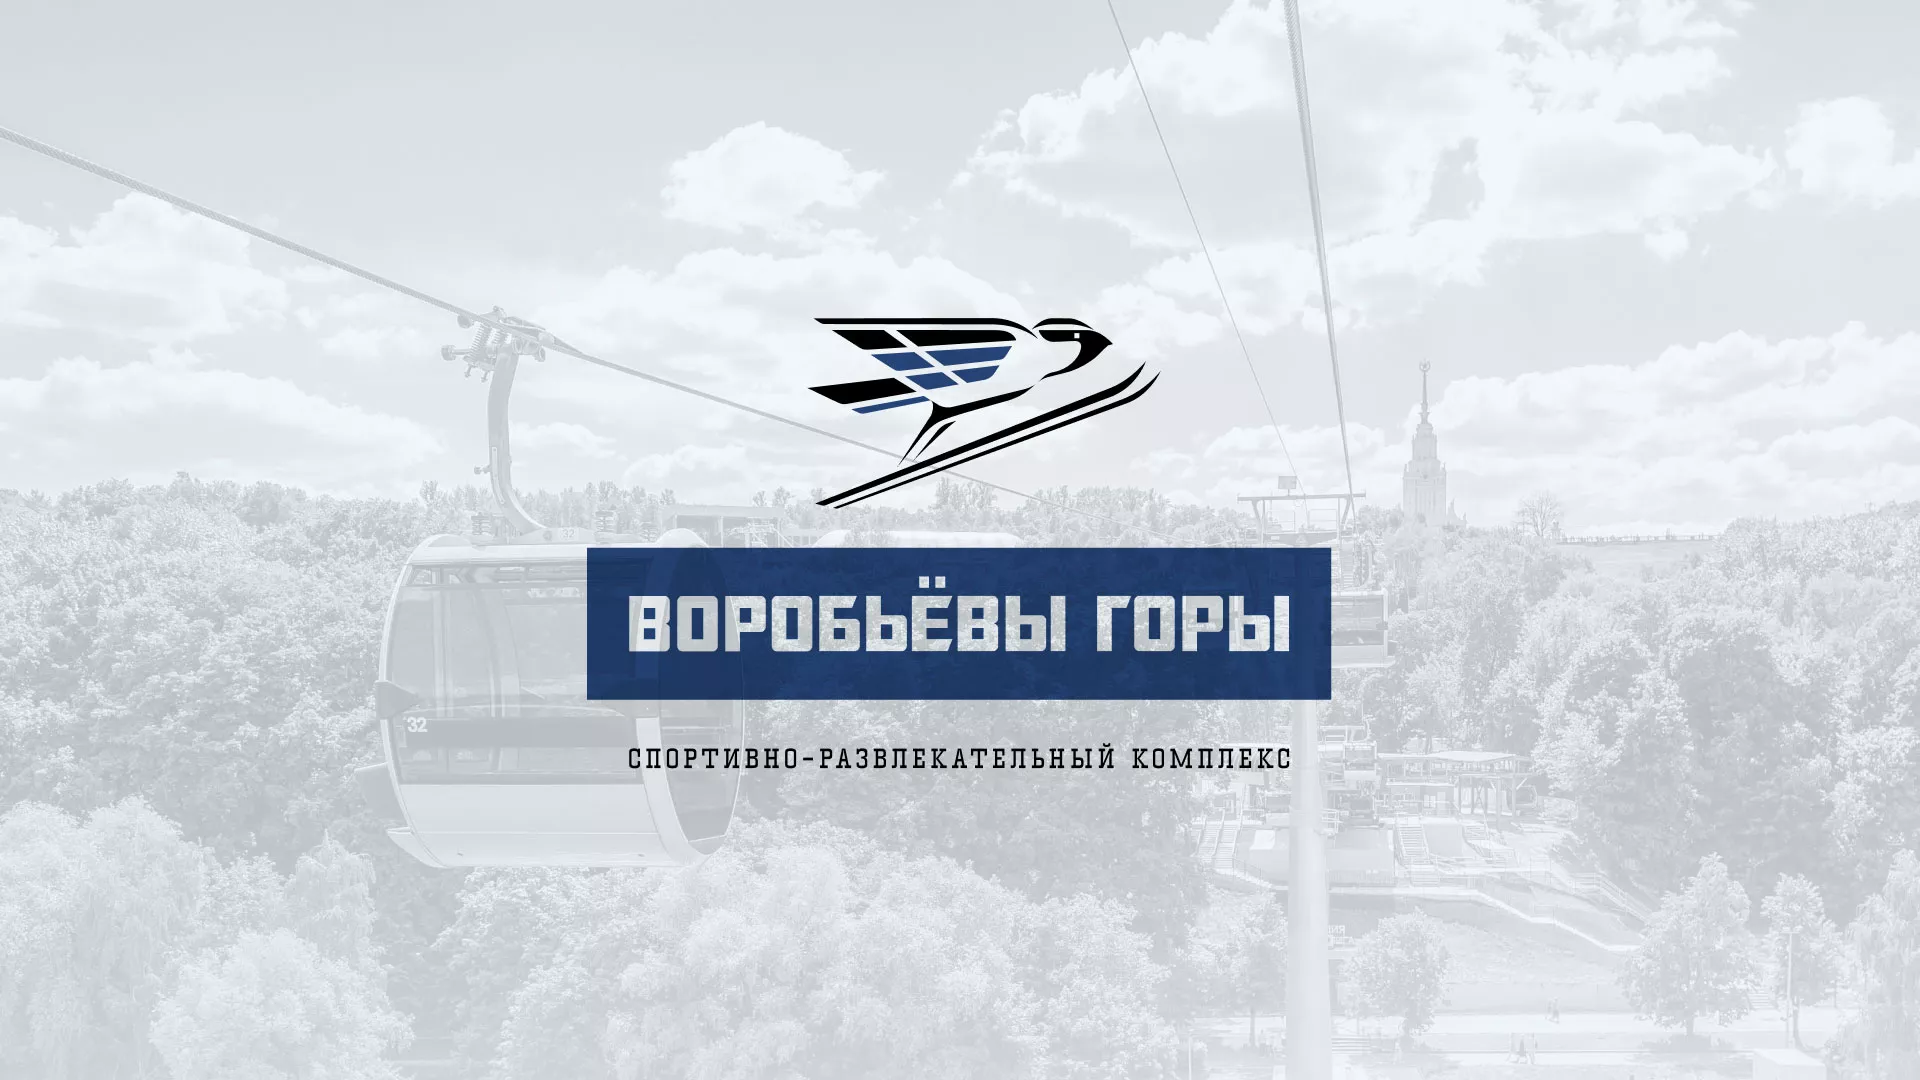 Разработка сайта в Брянске для спортивно-развлекательного комплекса «Воробьёвы горы»